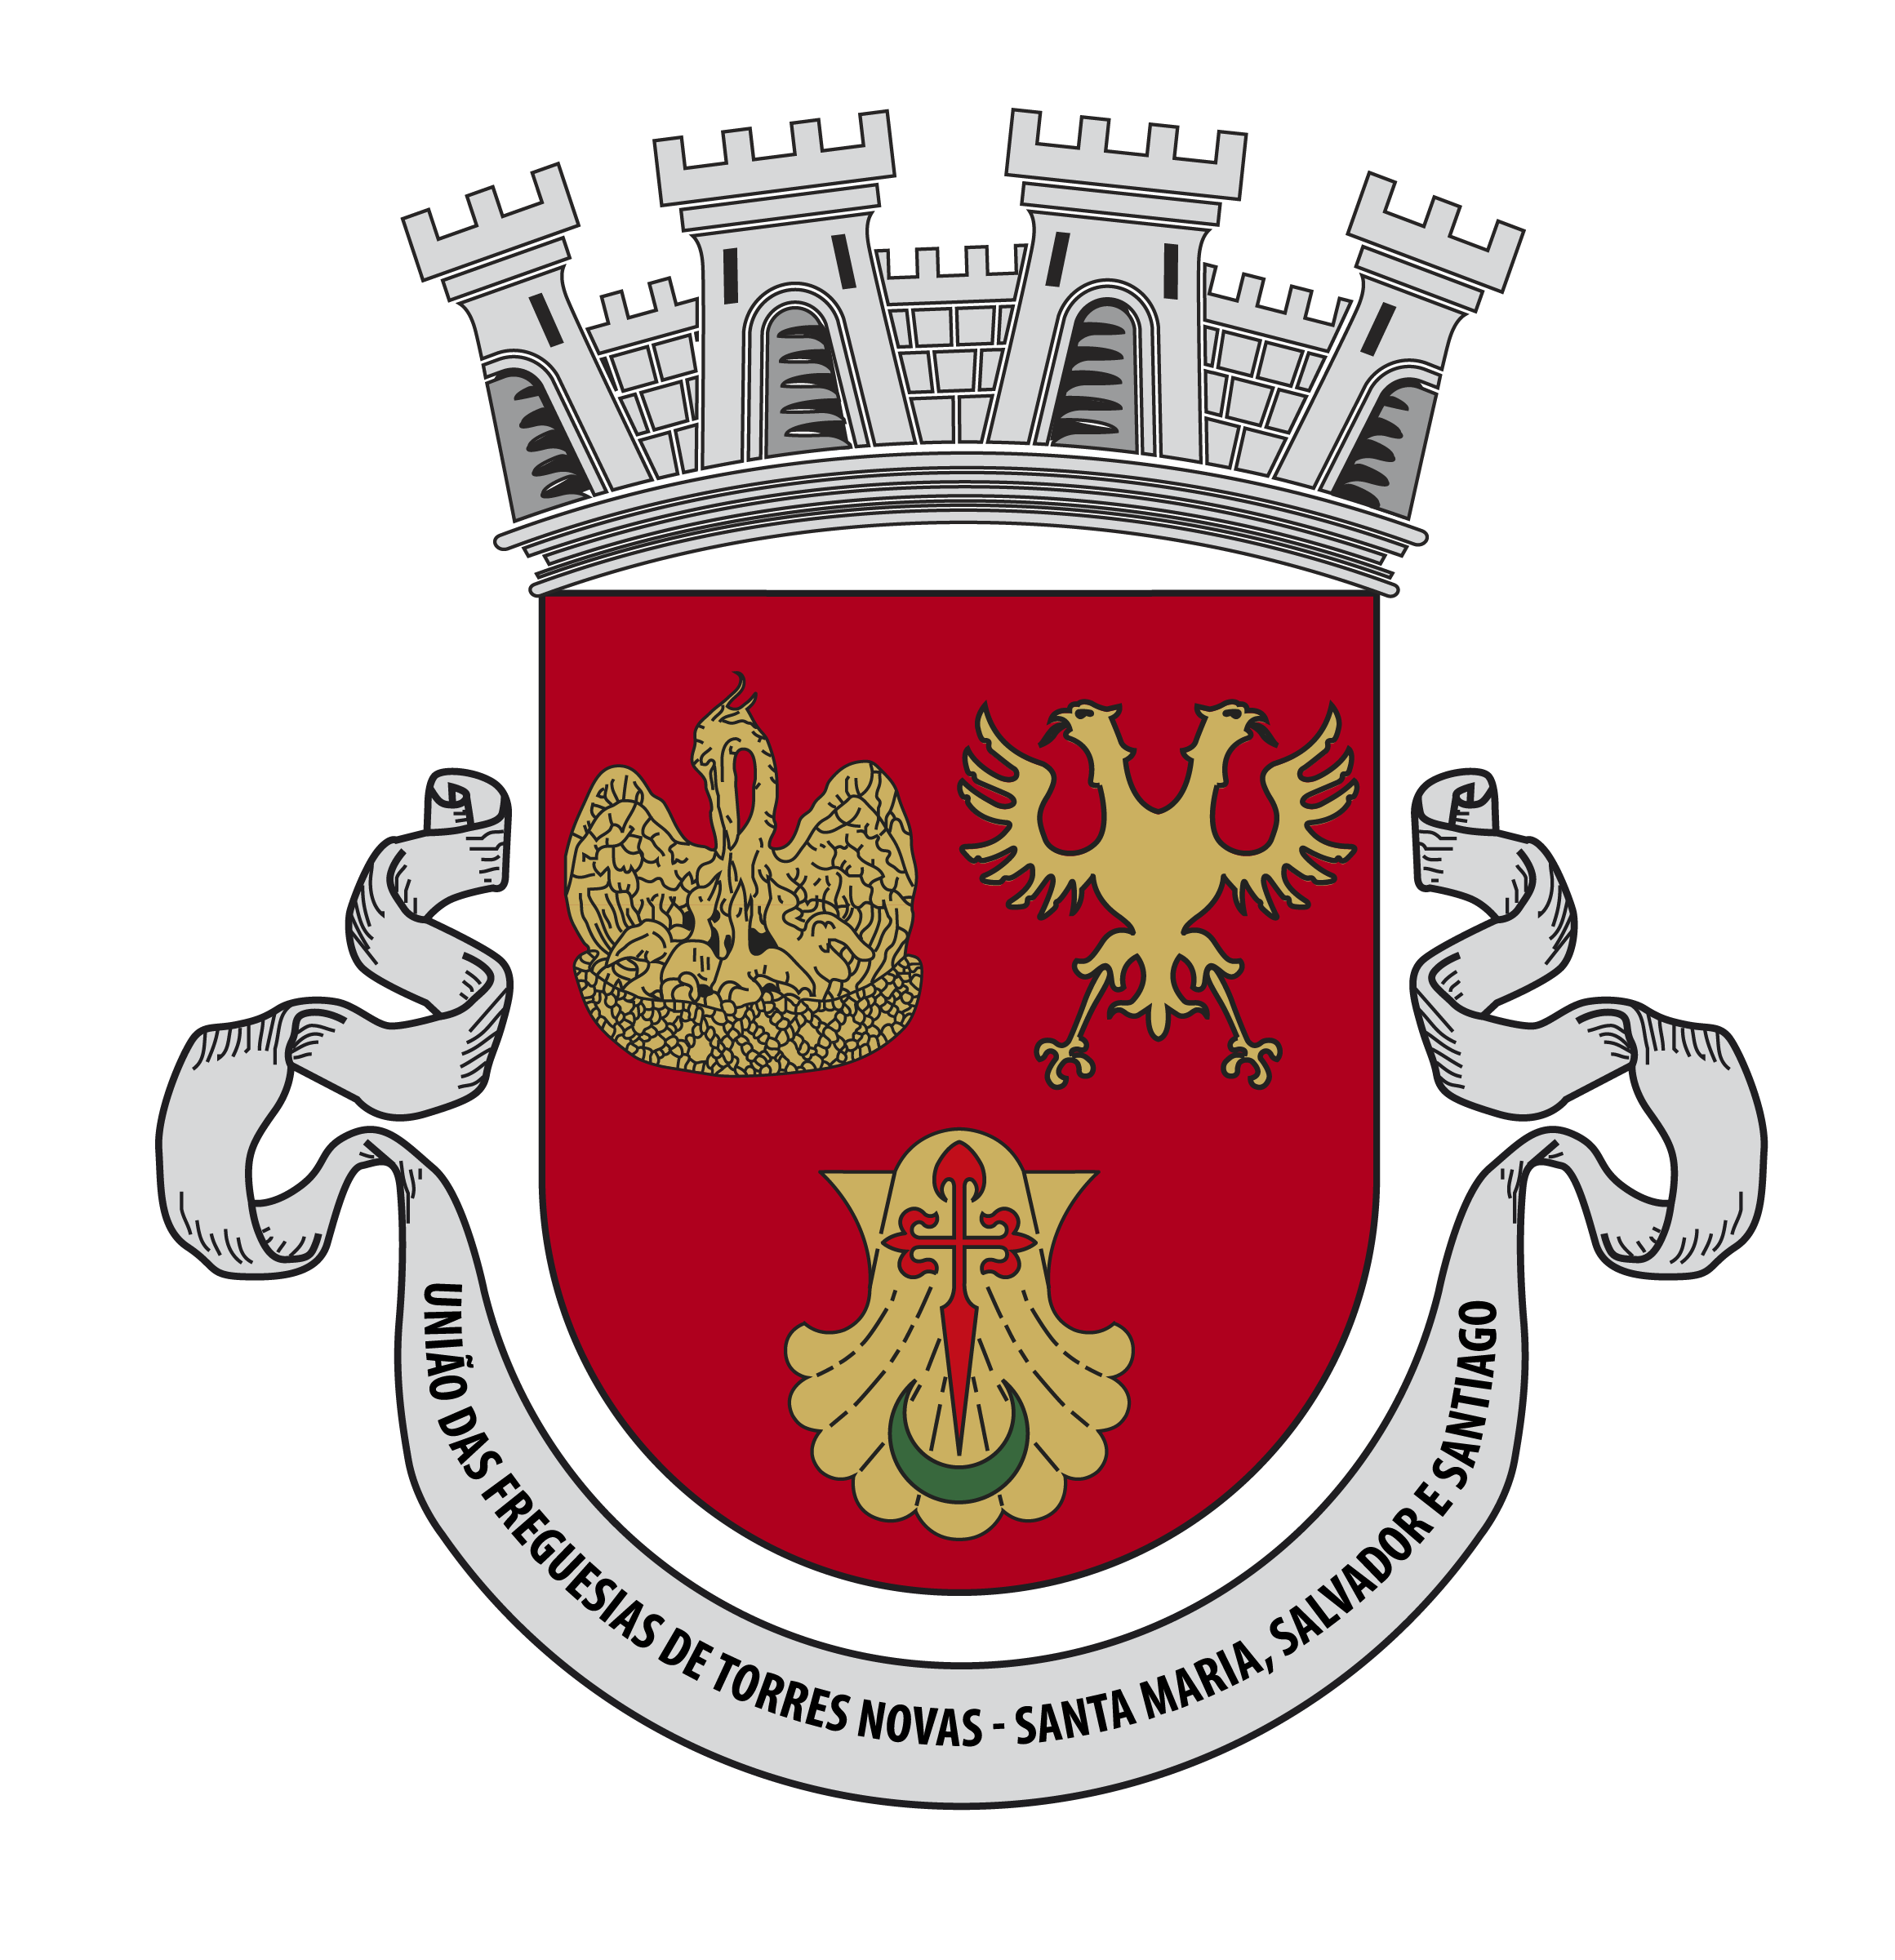 União das Freguesias de Torres Novas - Santa Maria, Salvador e Santiago